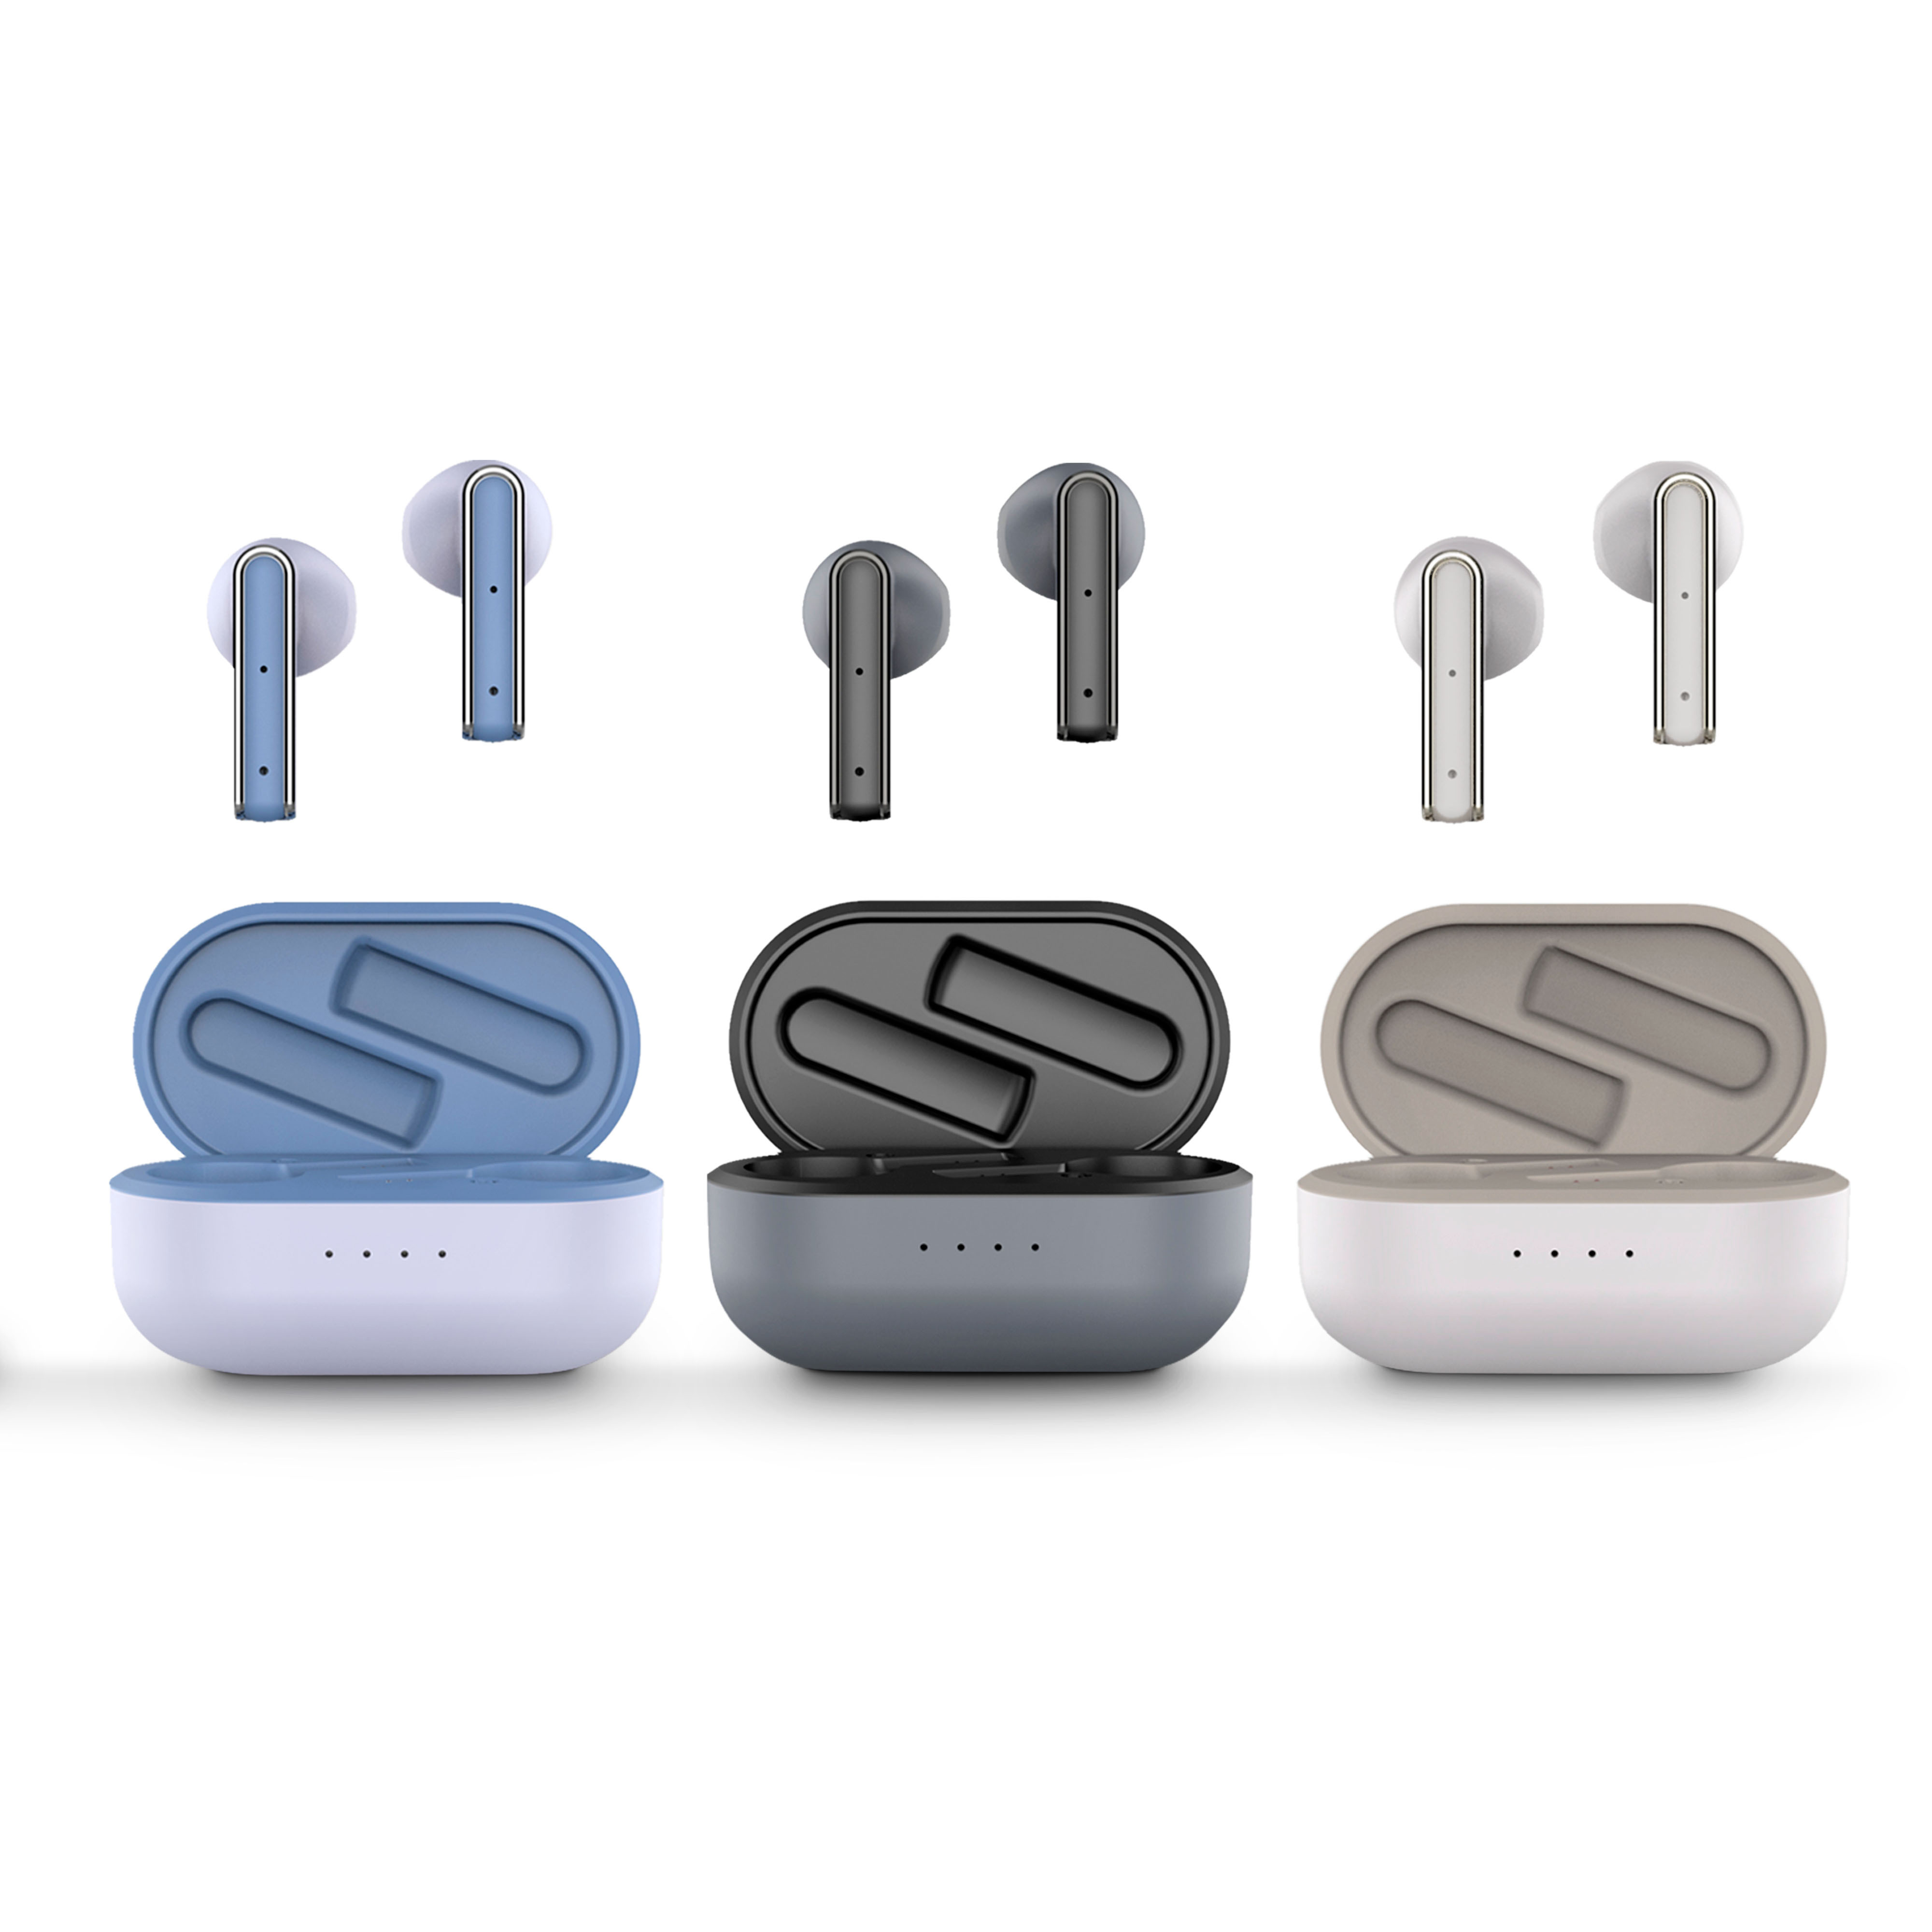 Des écouteurs disponibles en 4 couleurs. Choisissez les vôtres !